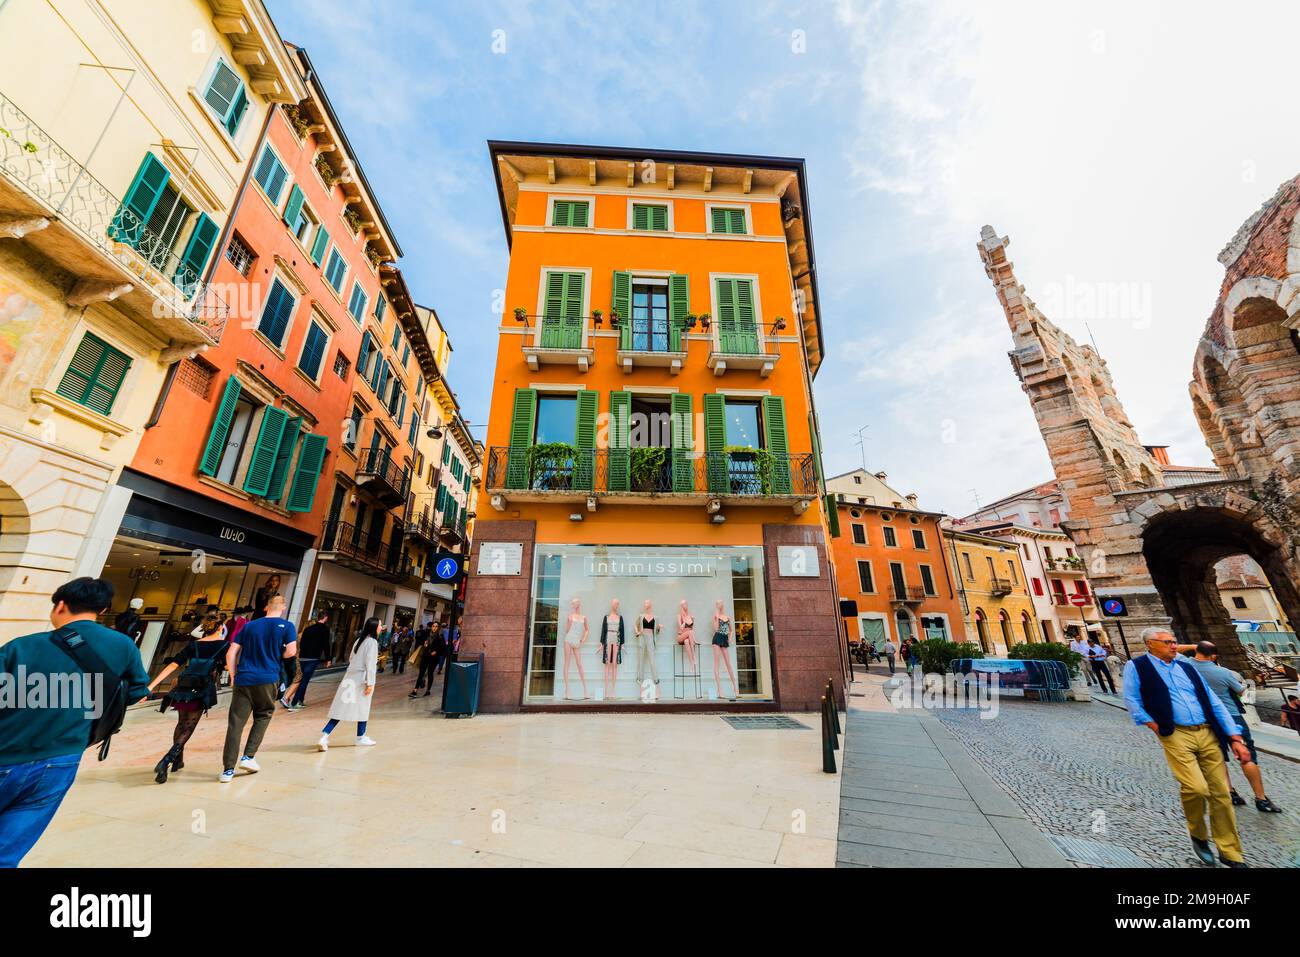 VERONA, ITALY - SEPTEMBER 26, 2019: Via Giuseppe Mazzini (Mazzini Street). Via Mazzini is the famous shopping street in Verona. Italy. Stock Photo